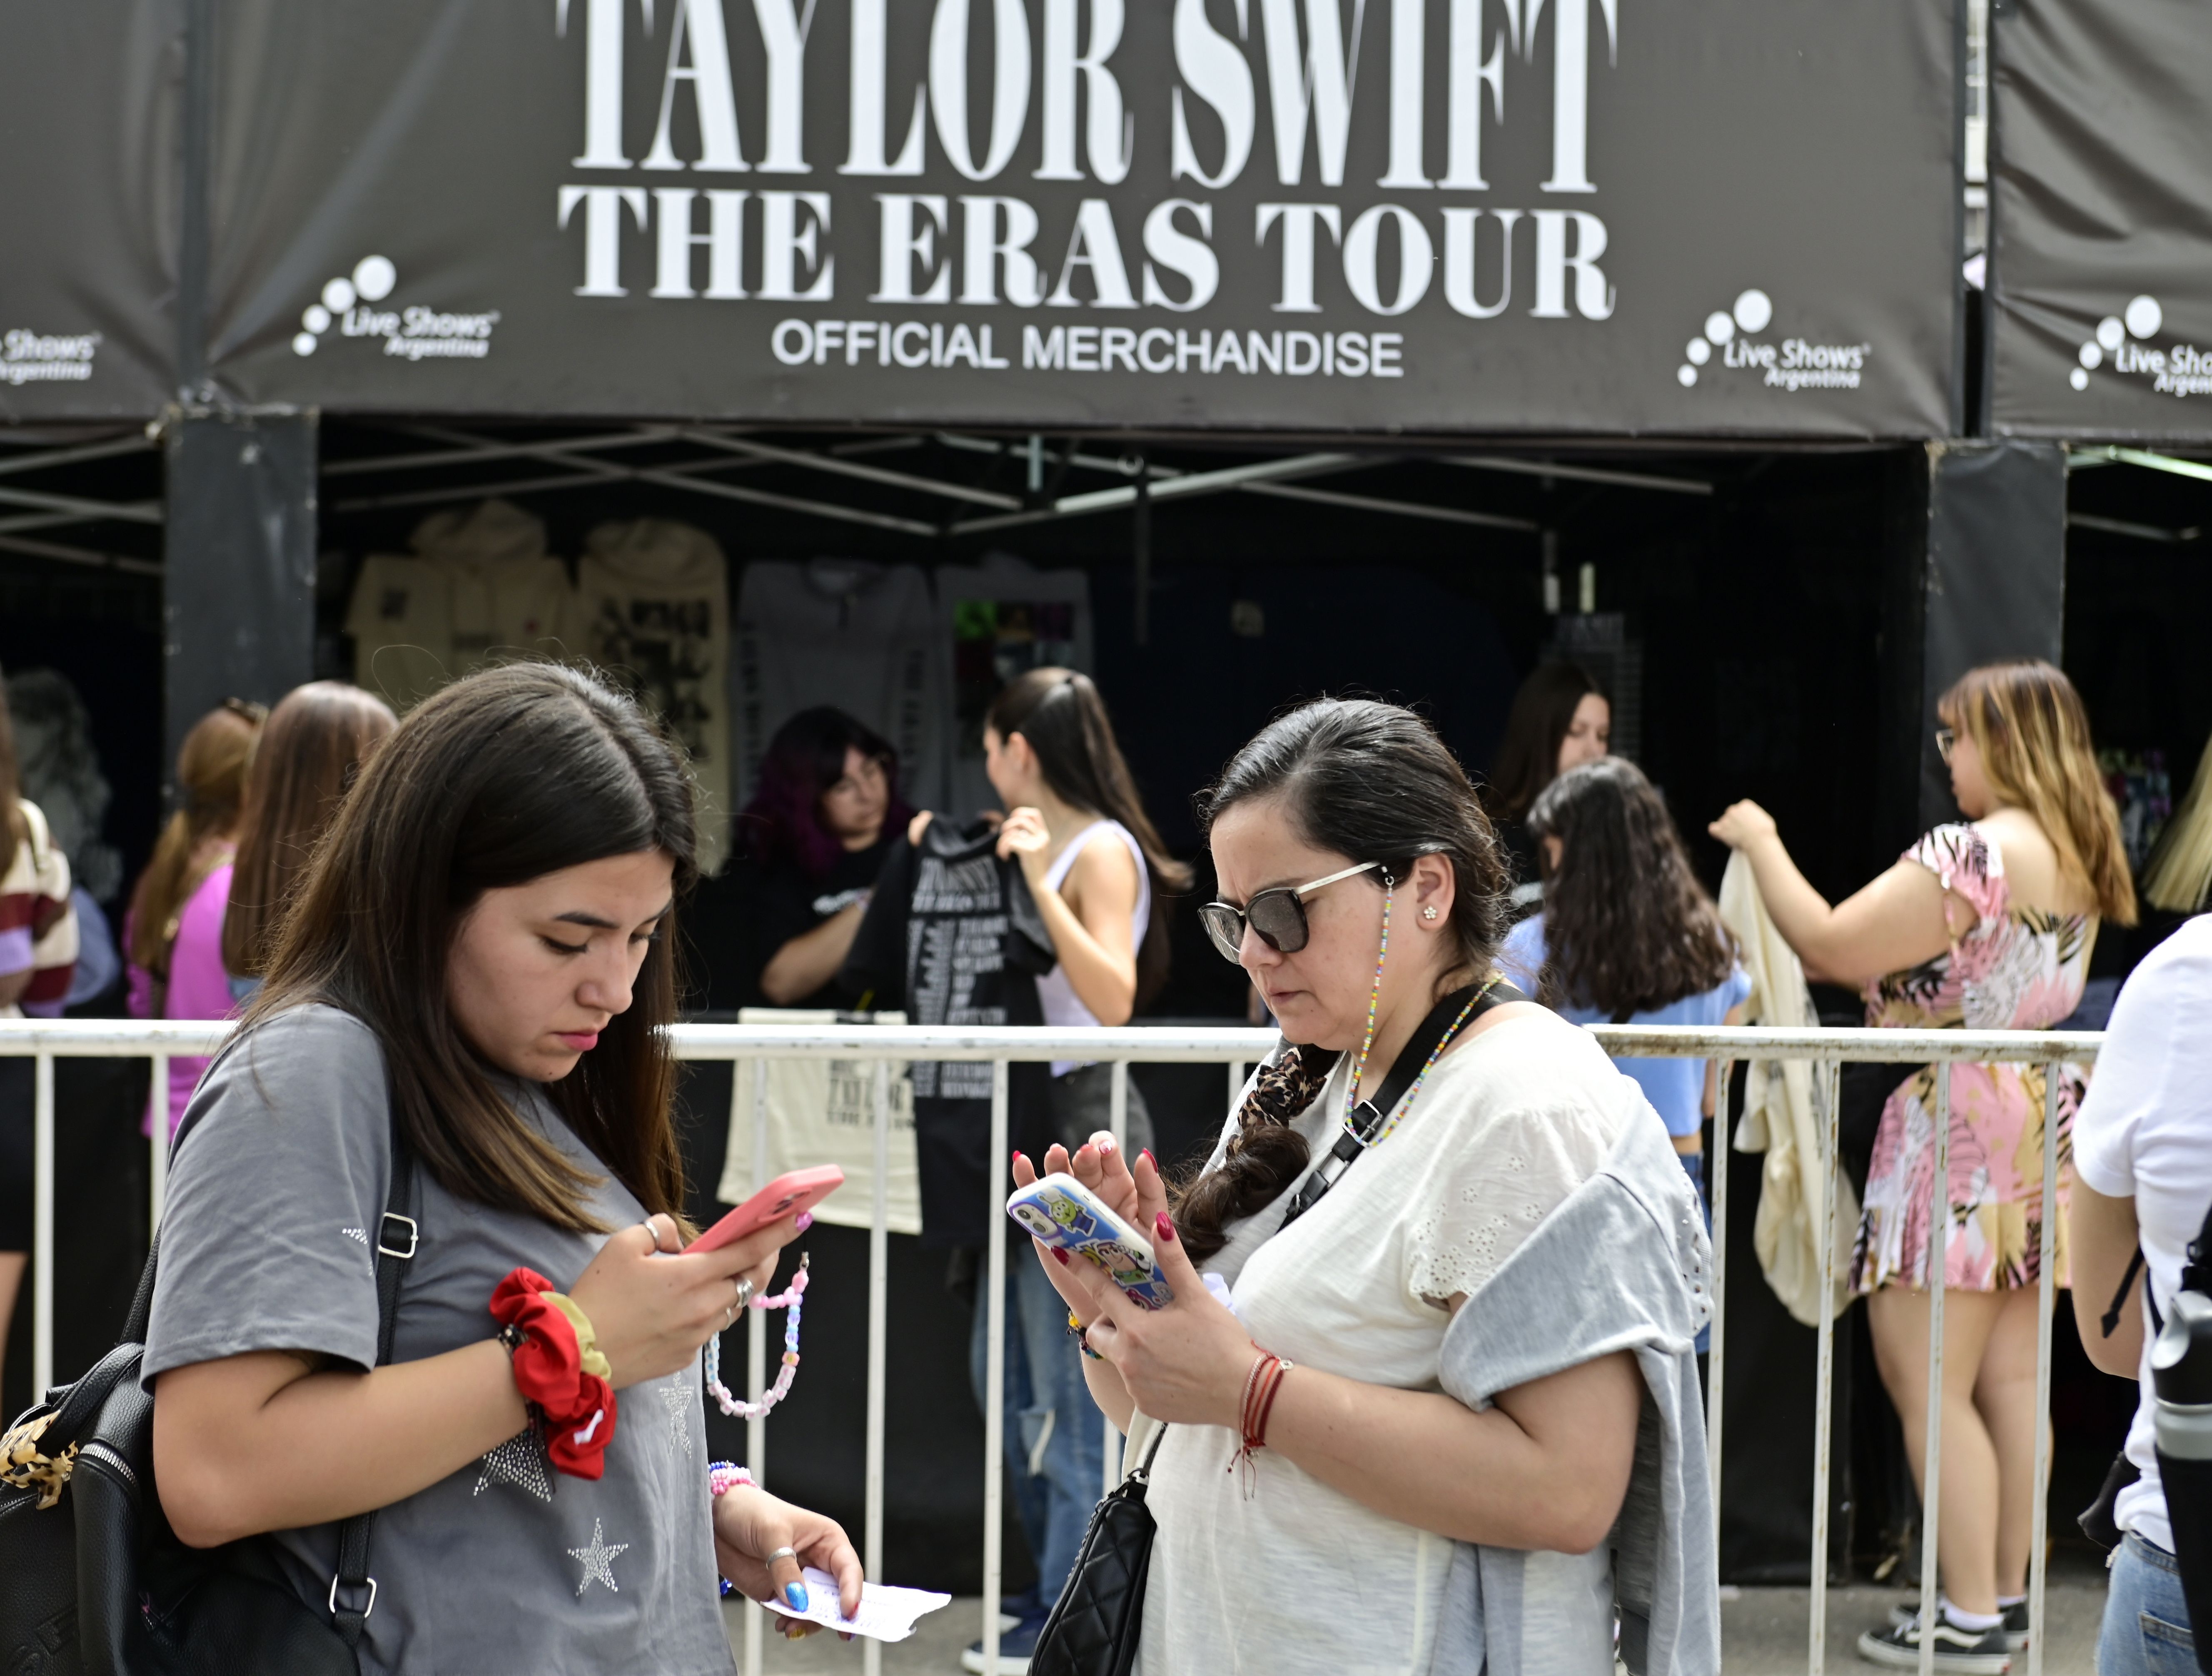 Taylor Swift Eras Tour in Argentina